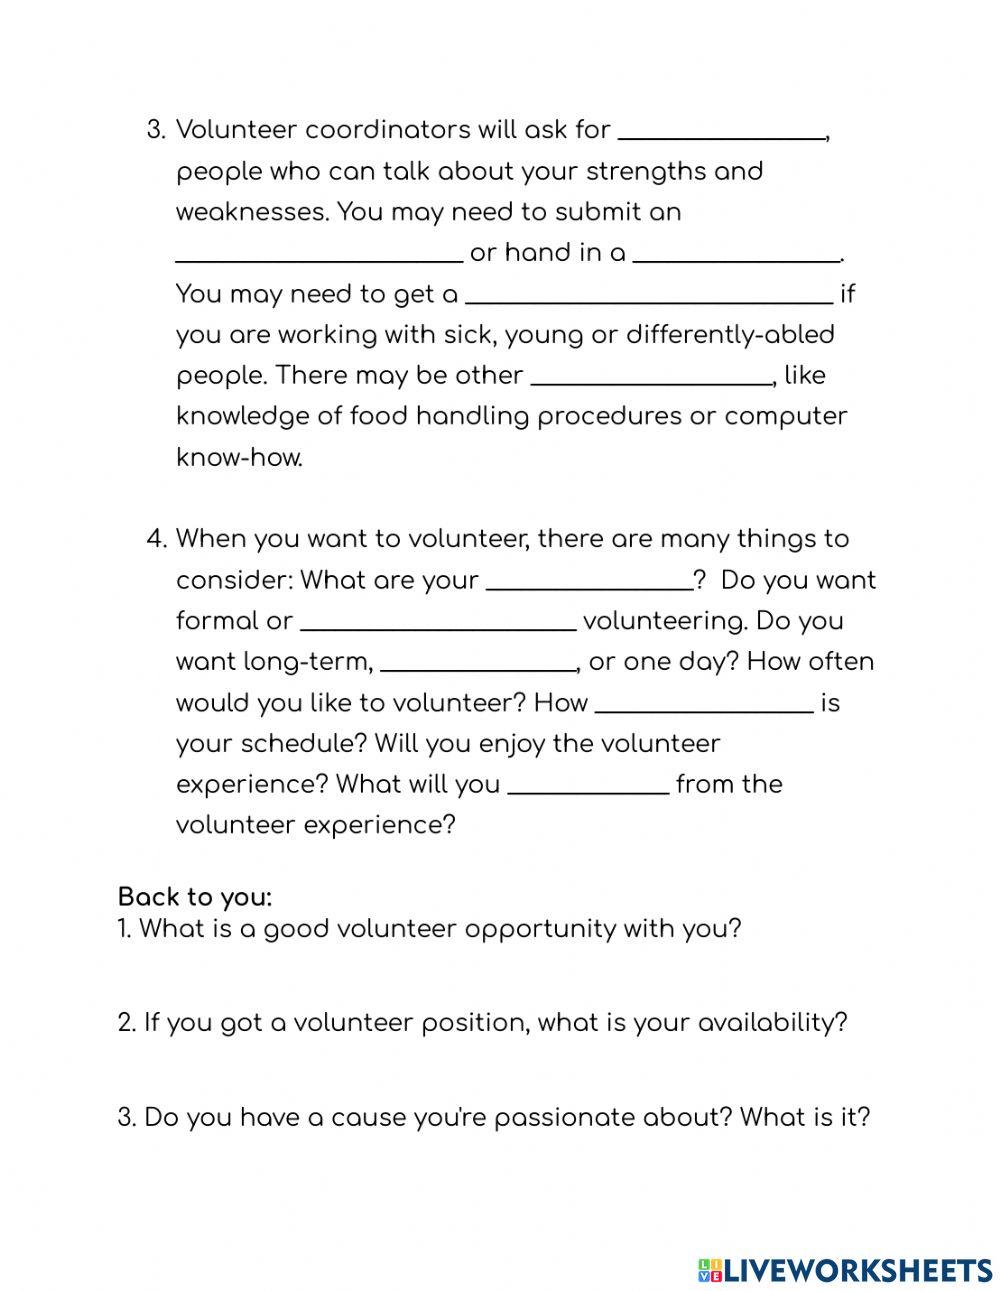 CLB 5-6 Volunteer Opportunities